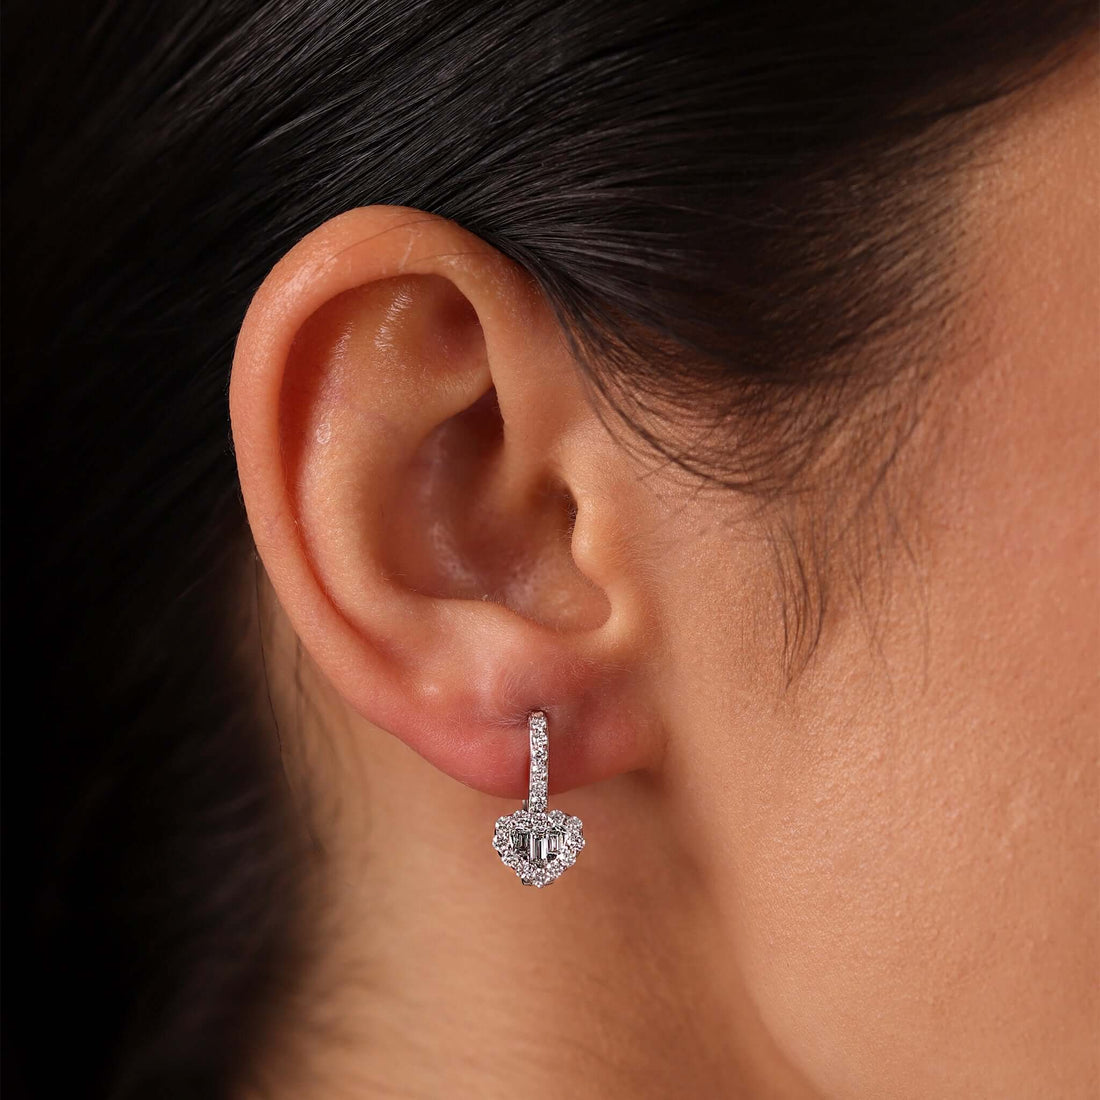 Jewelry Hearts | Diamond Earrings | 0.71 Cts. | 14K Gold - White / Pair / Diamonds - earring Zengoda Shop online